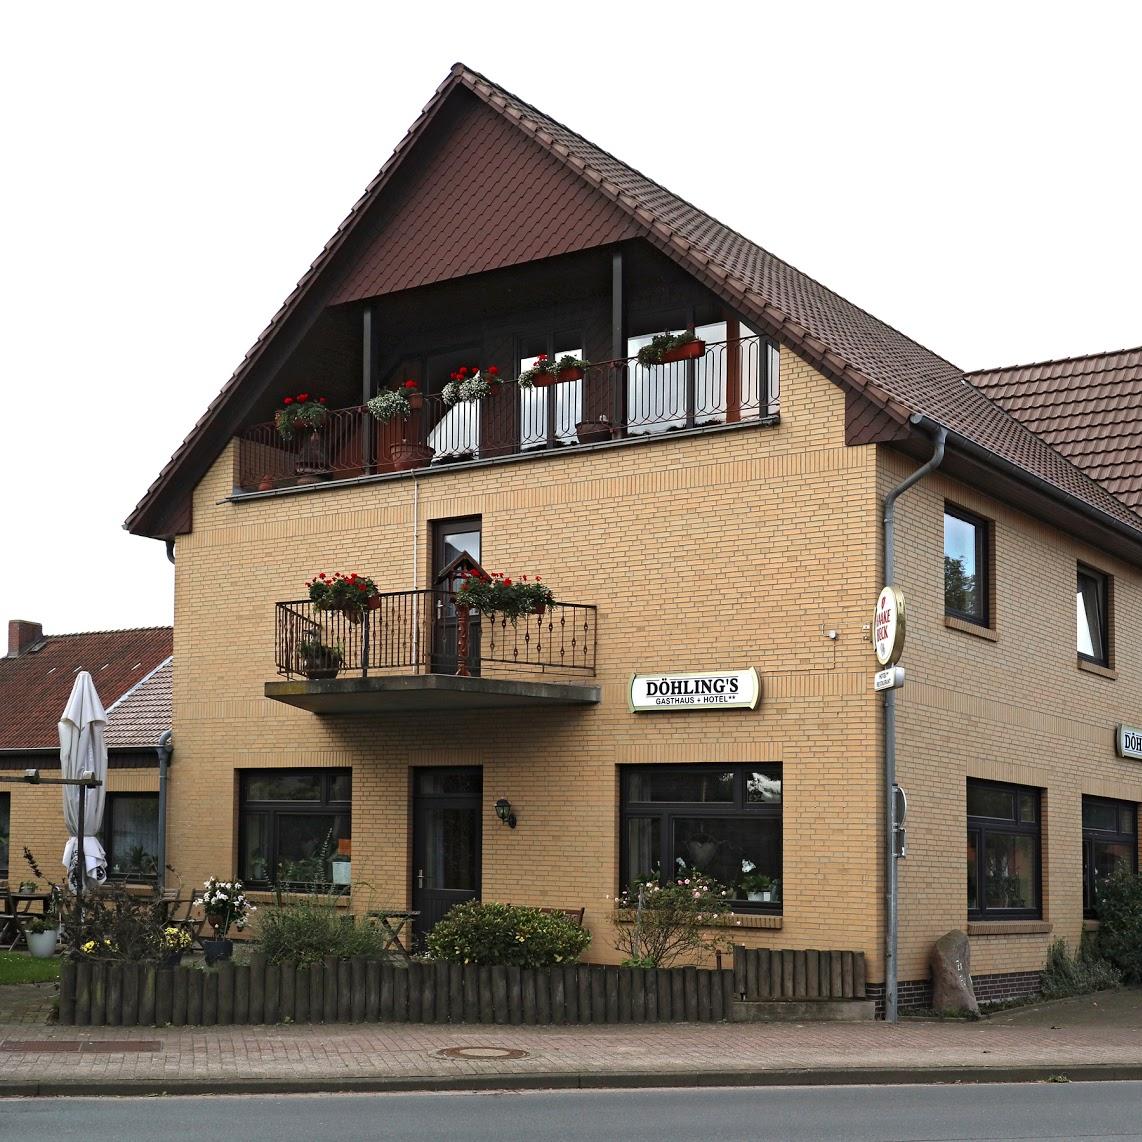 Restaurant "Döhling